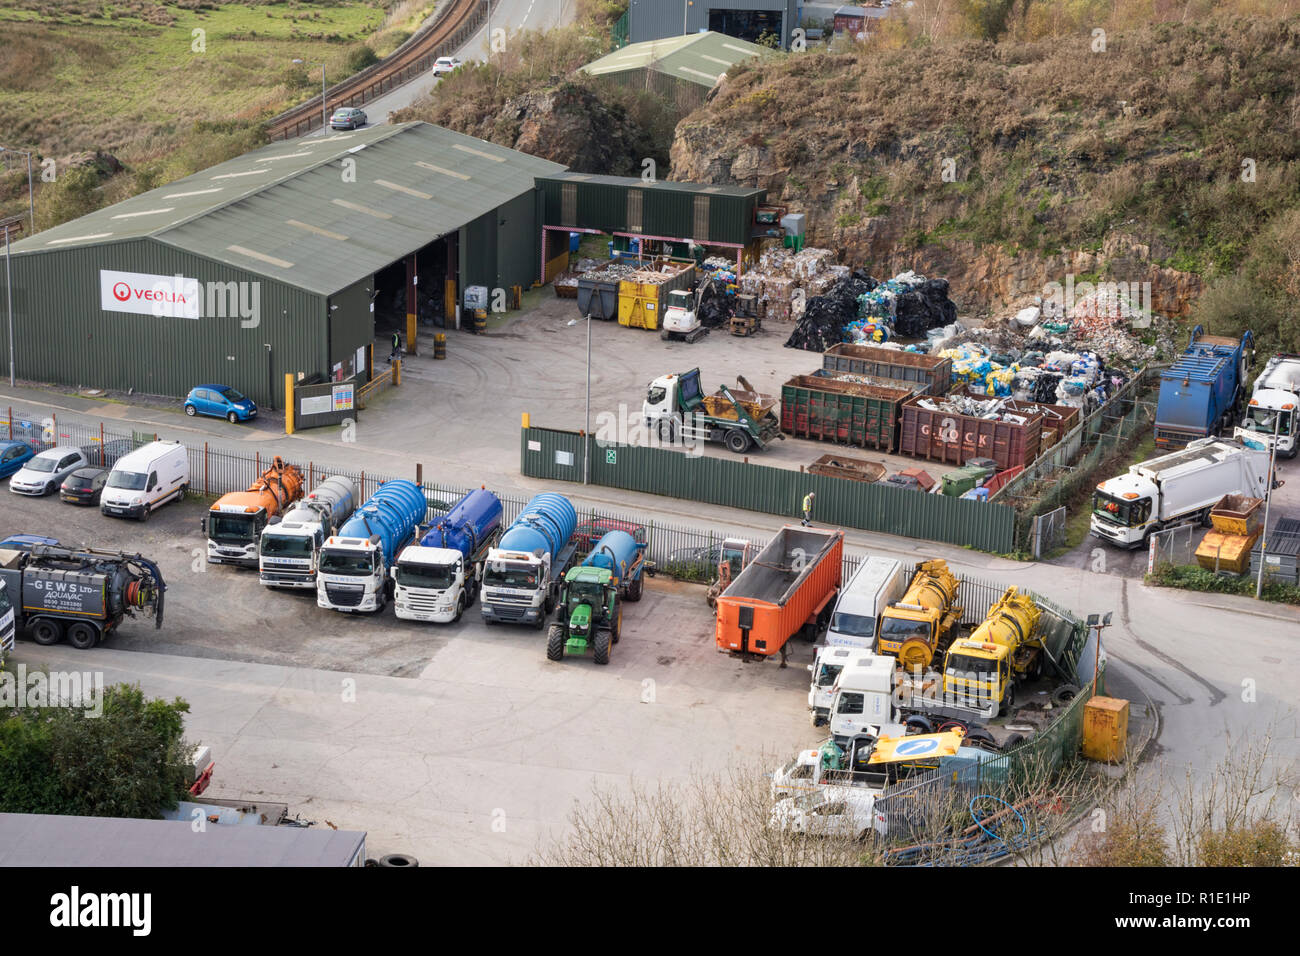 Veolia waste management depot near Porthmadog, North Wales, UK Stock Photo